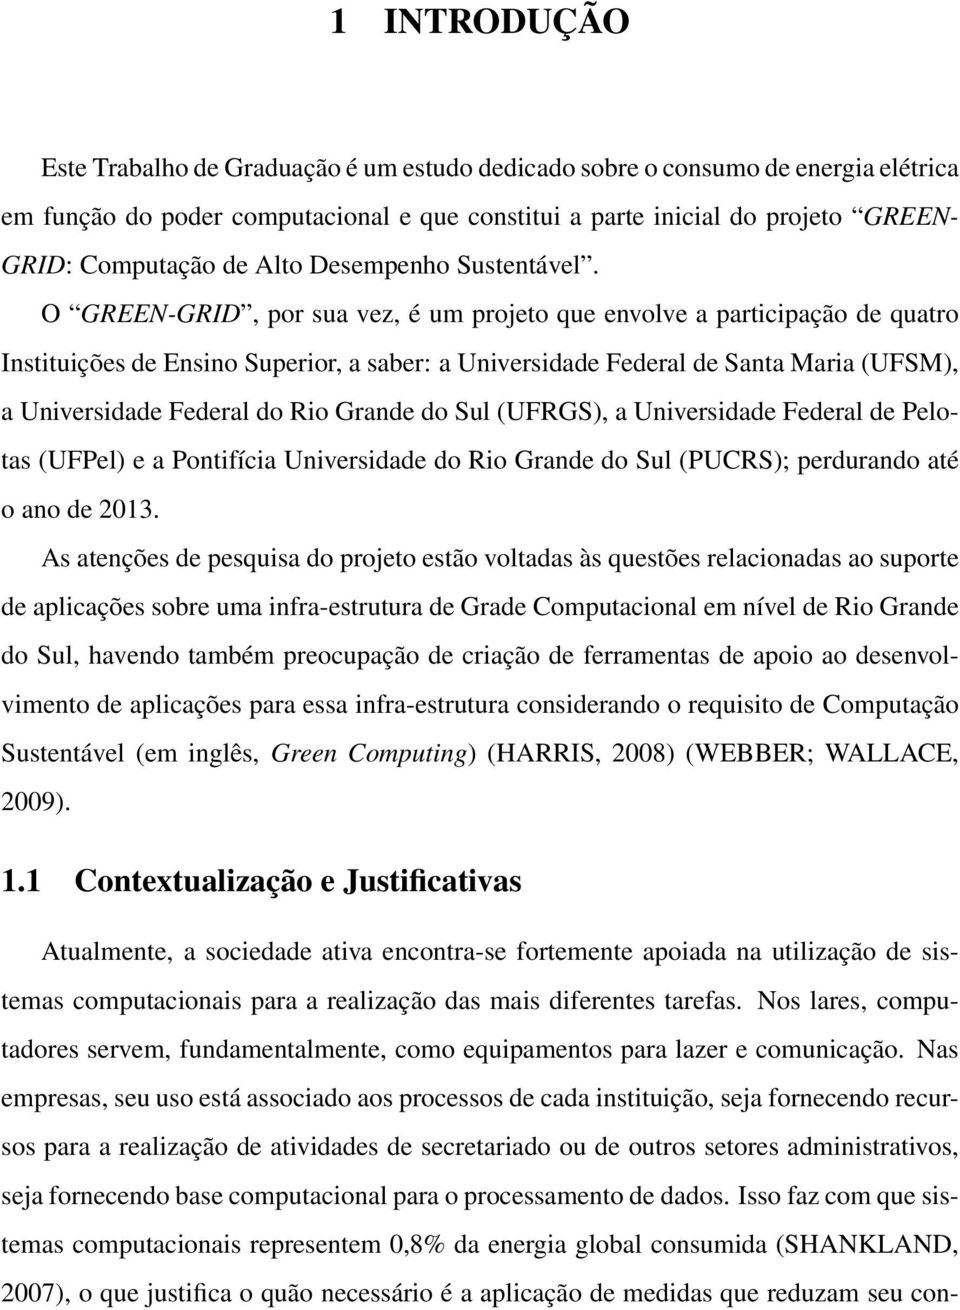 O GREEN-GRID, por sua vez, é um projeto que envolve a participação de quatro Instituições de Ensino Superior, a saber: a Universidade Federal de Santa Maria (UFSM), a Universidade Federal do Rio